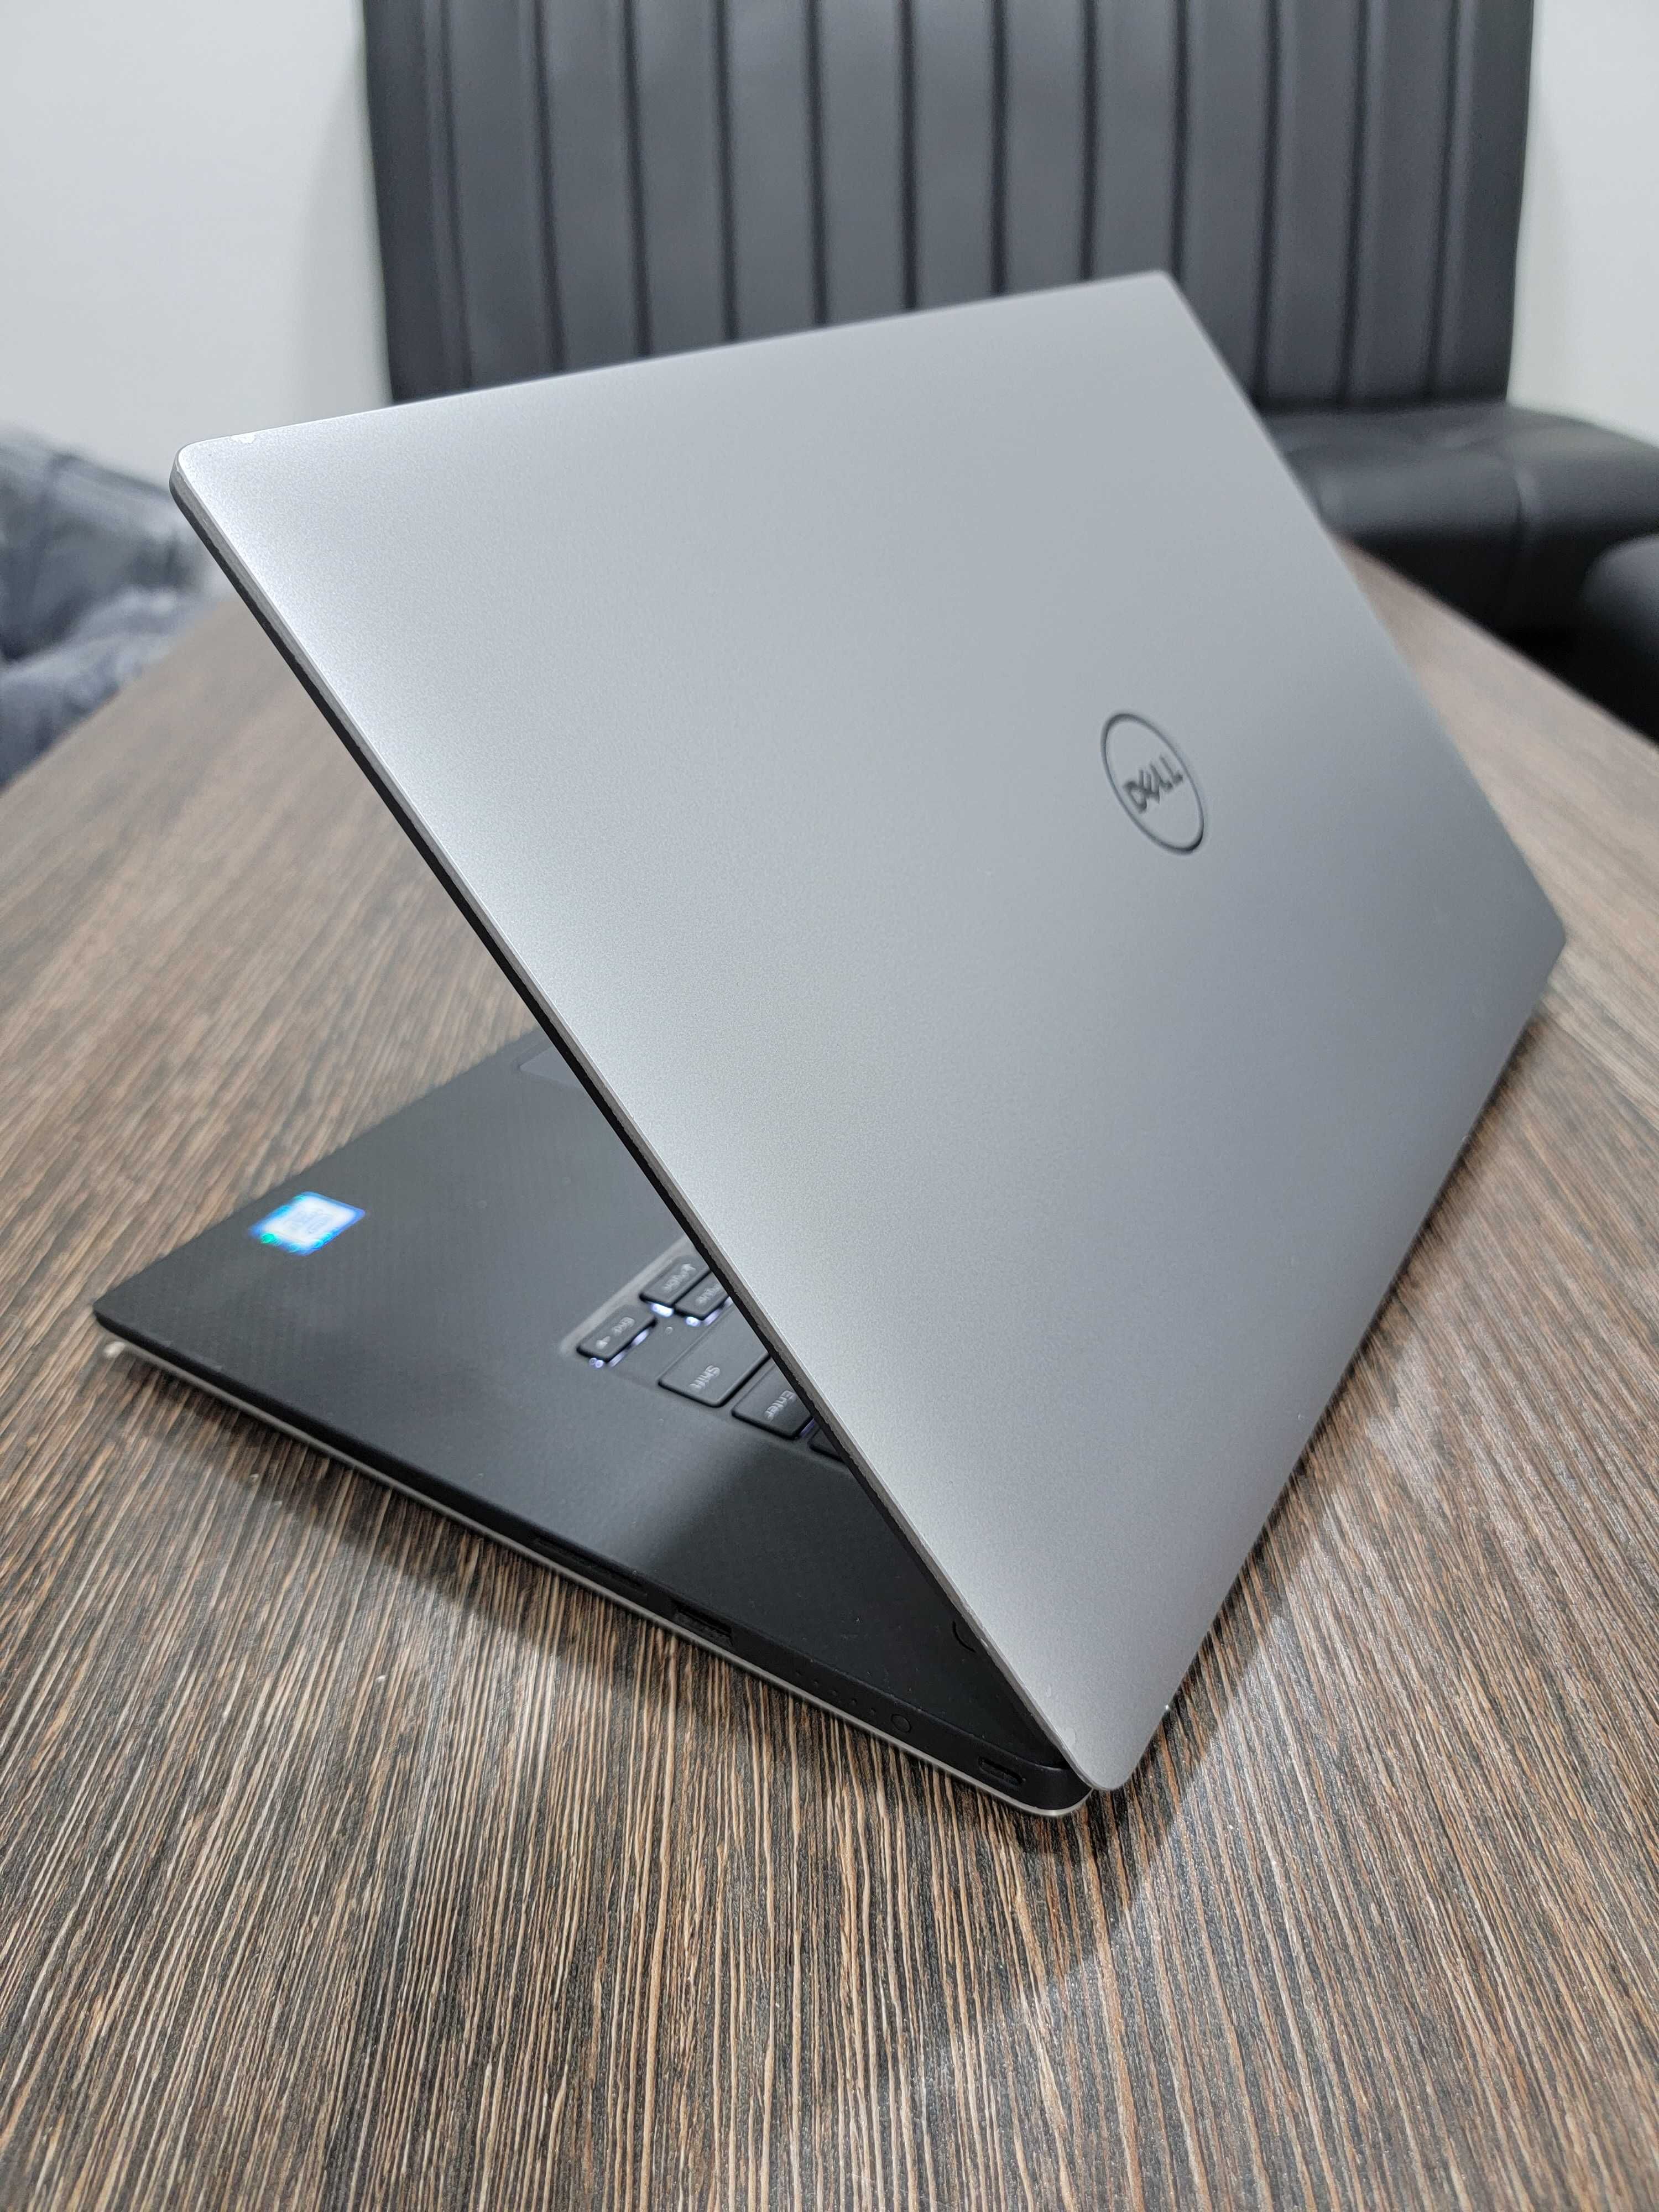 мощный i7 ноутбук Dell
Precision 5520, для игр и графических программ